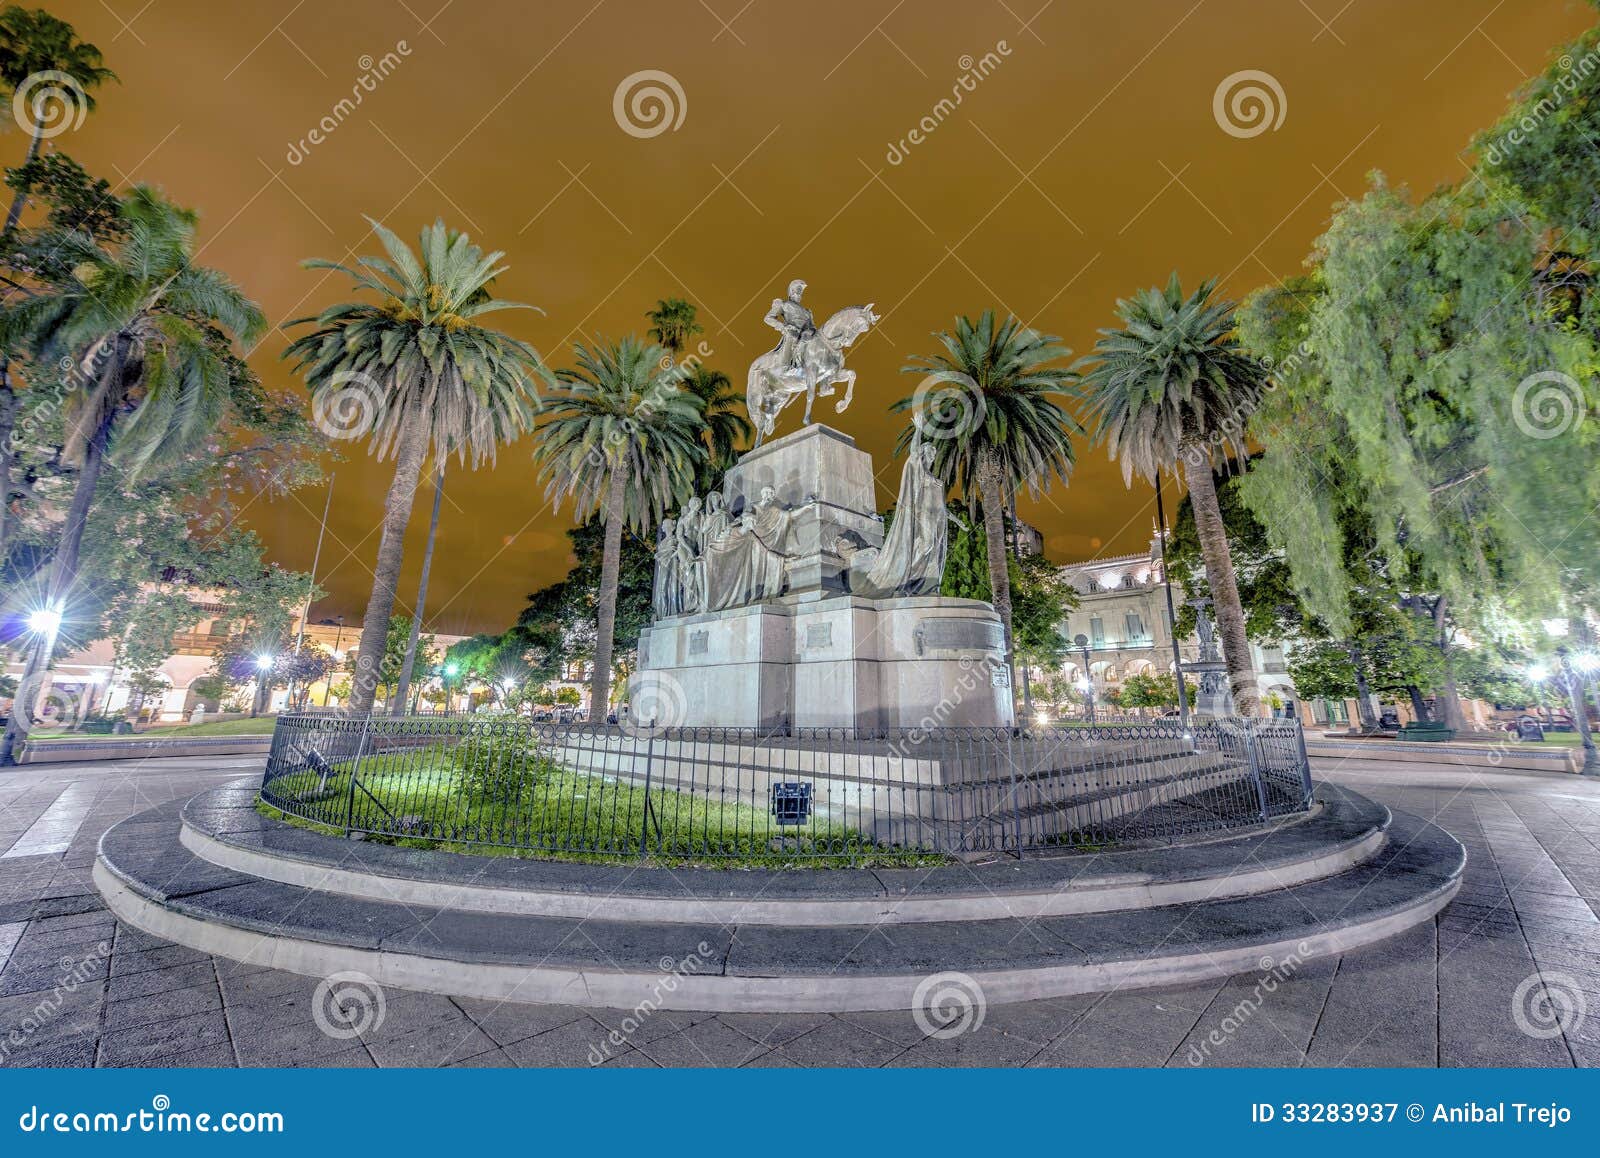 9 de julio square in salta, argentina